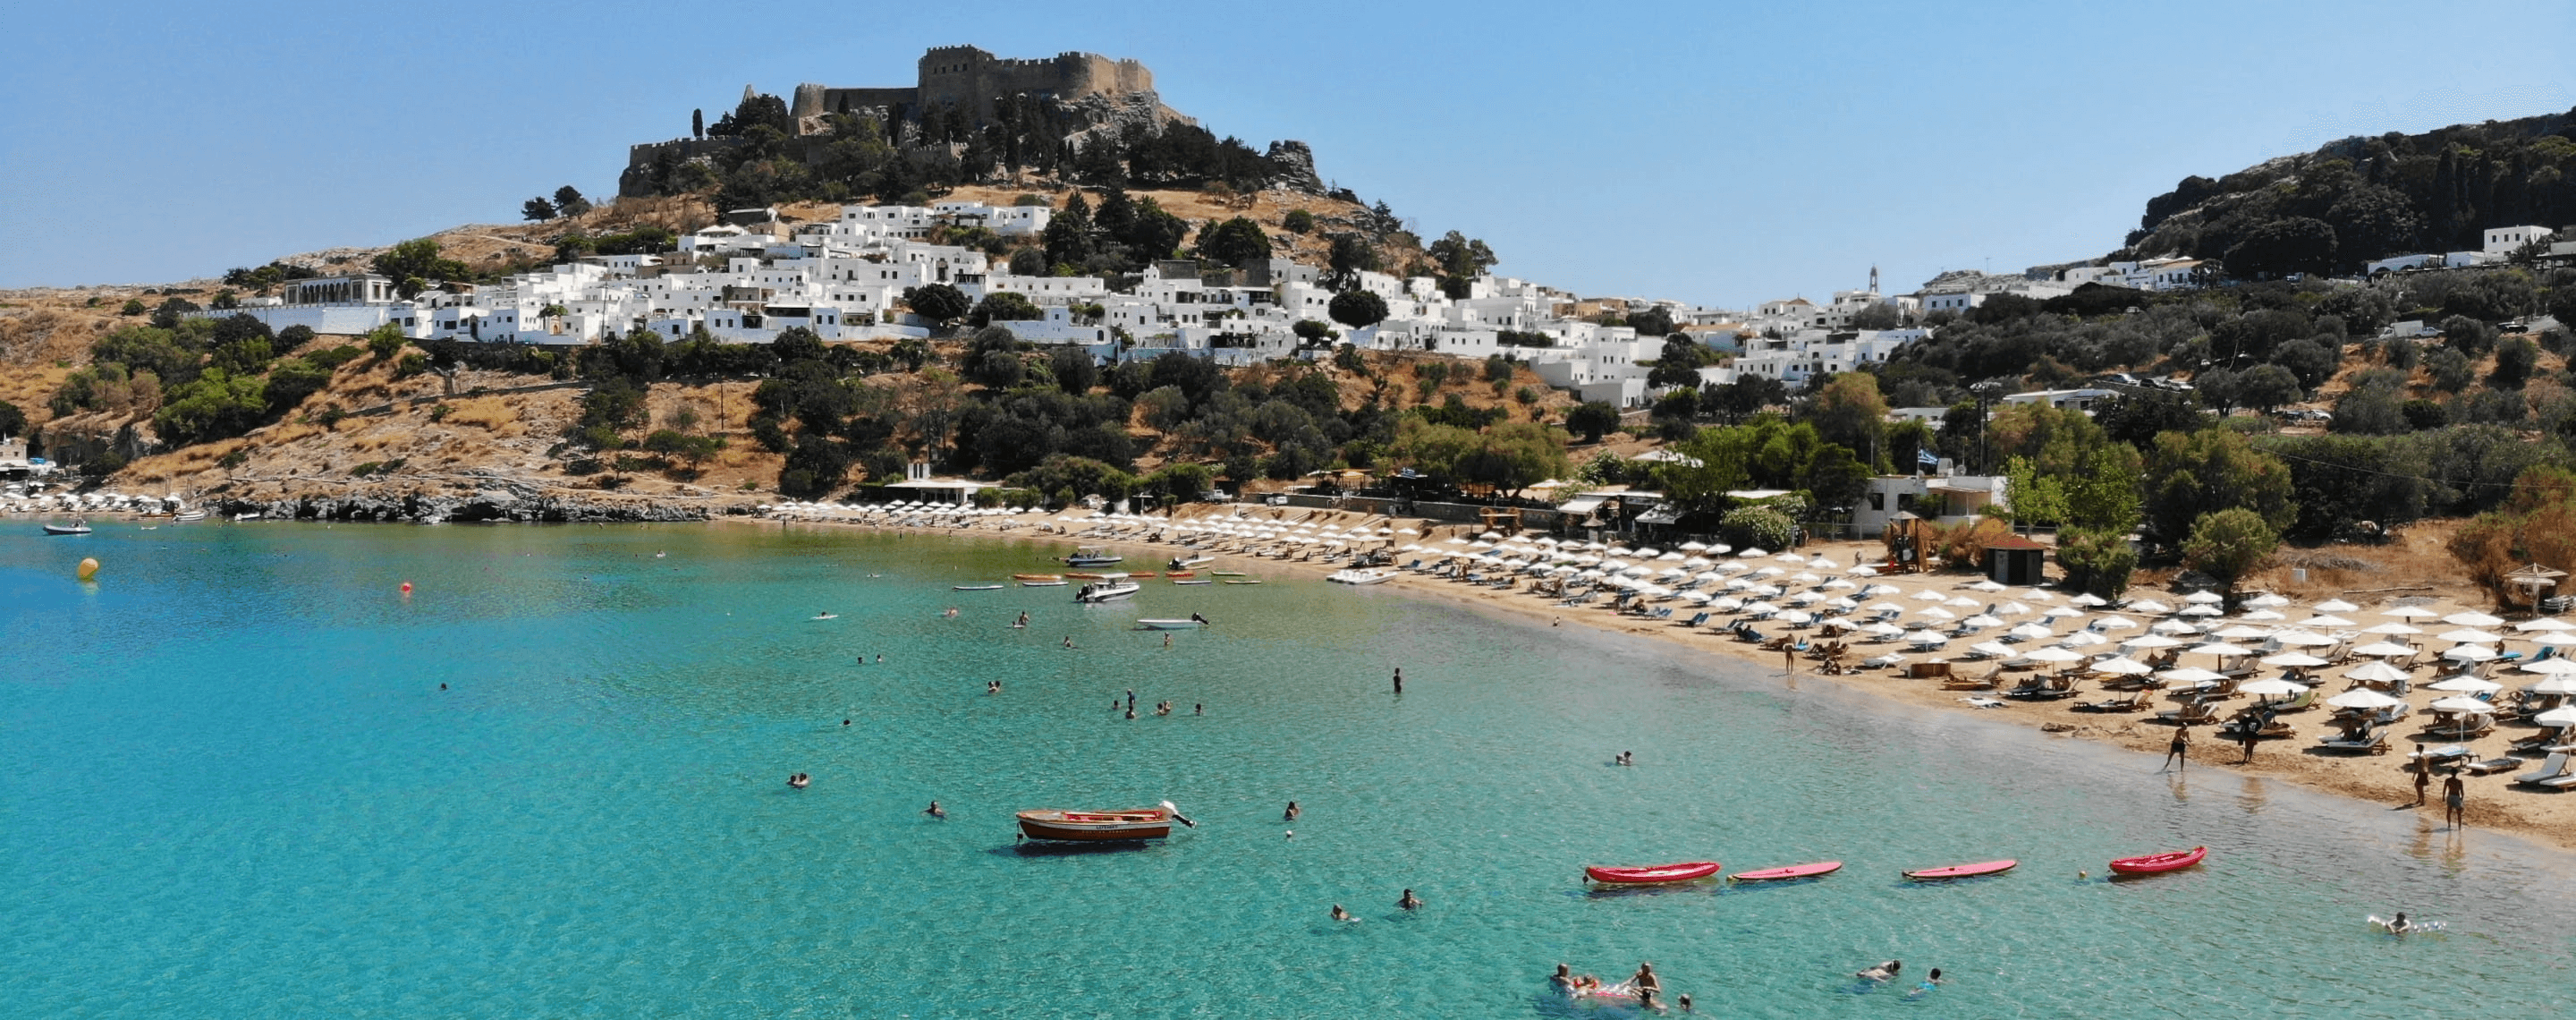 Blick auf Rhodos, Griechenland